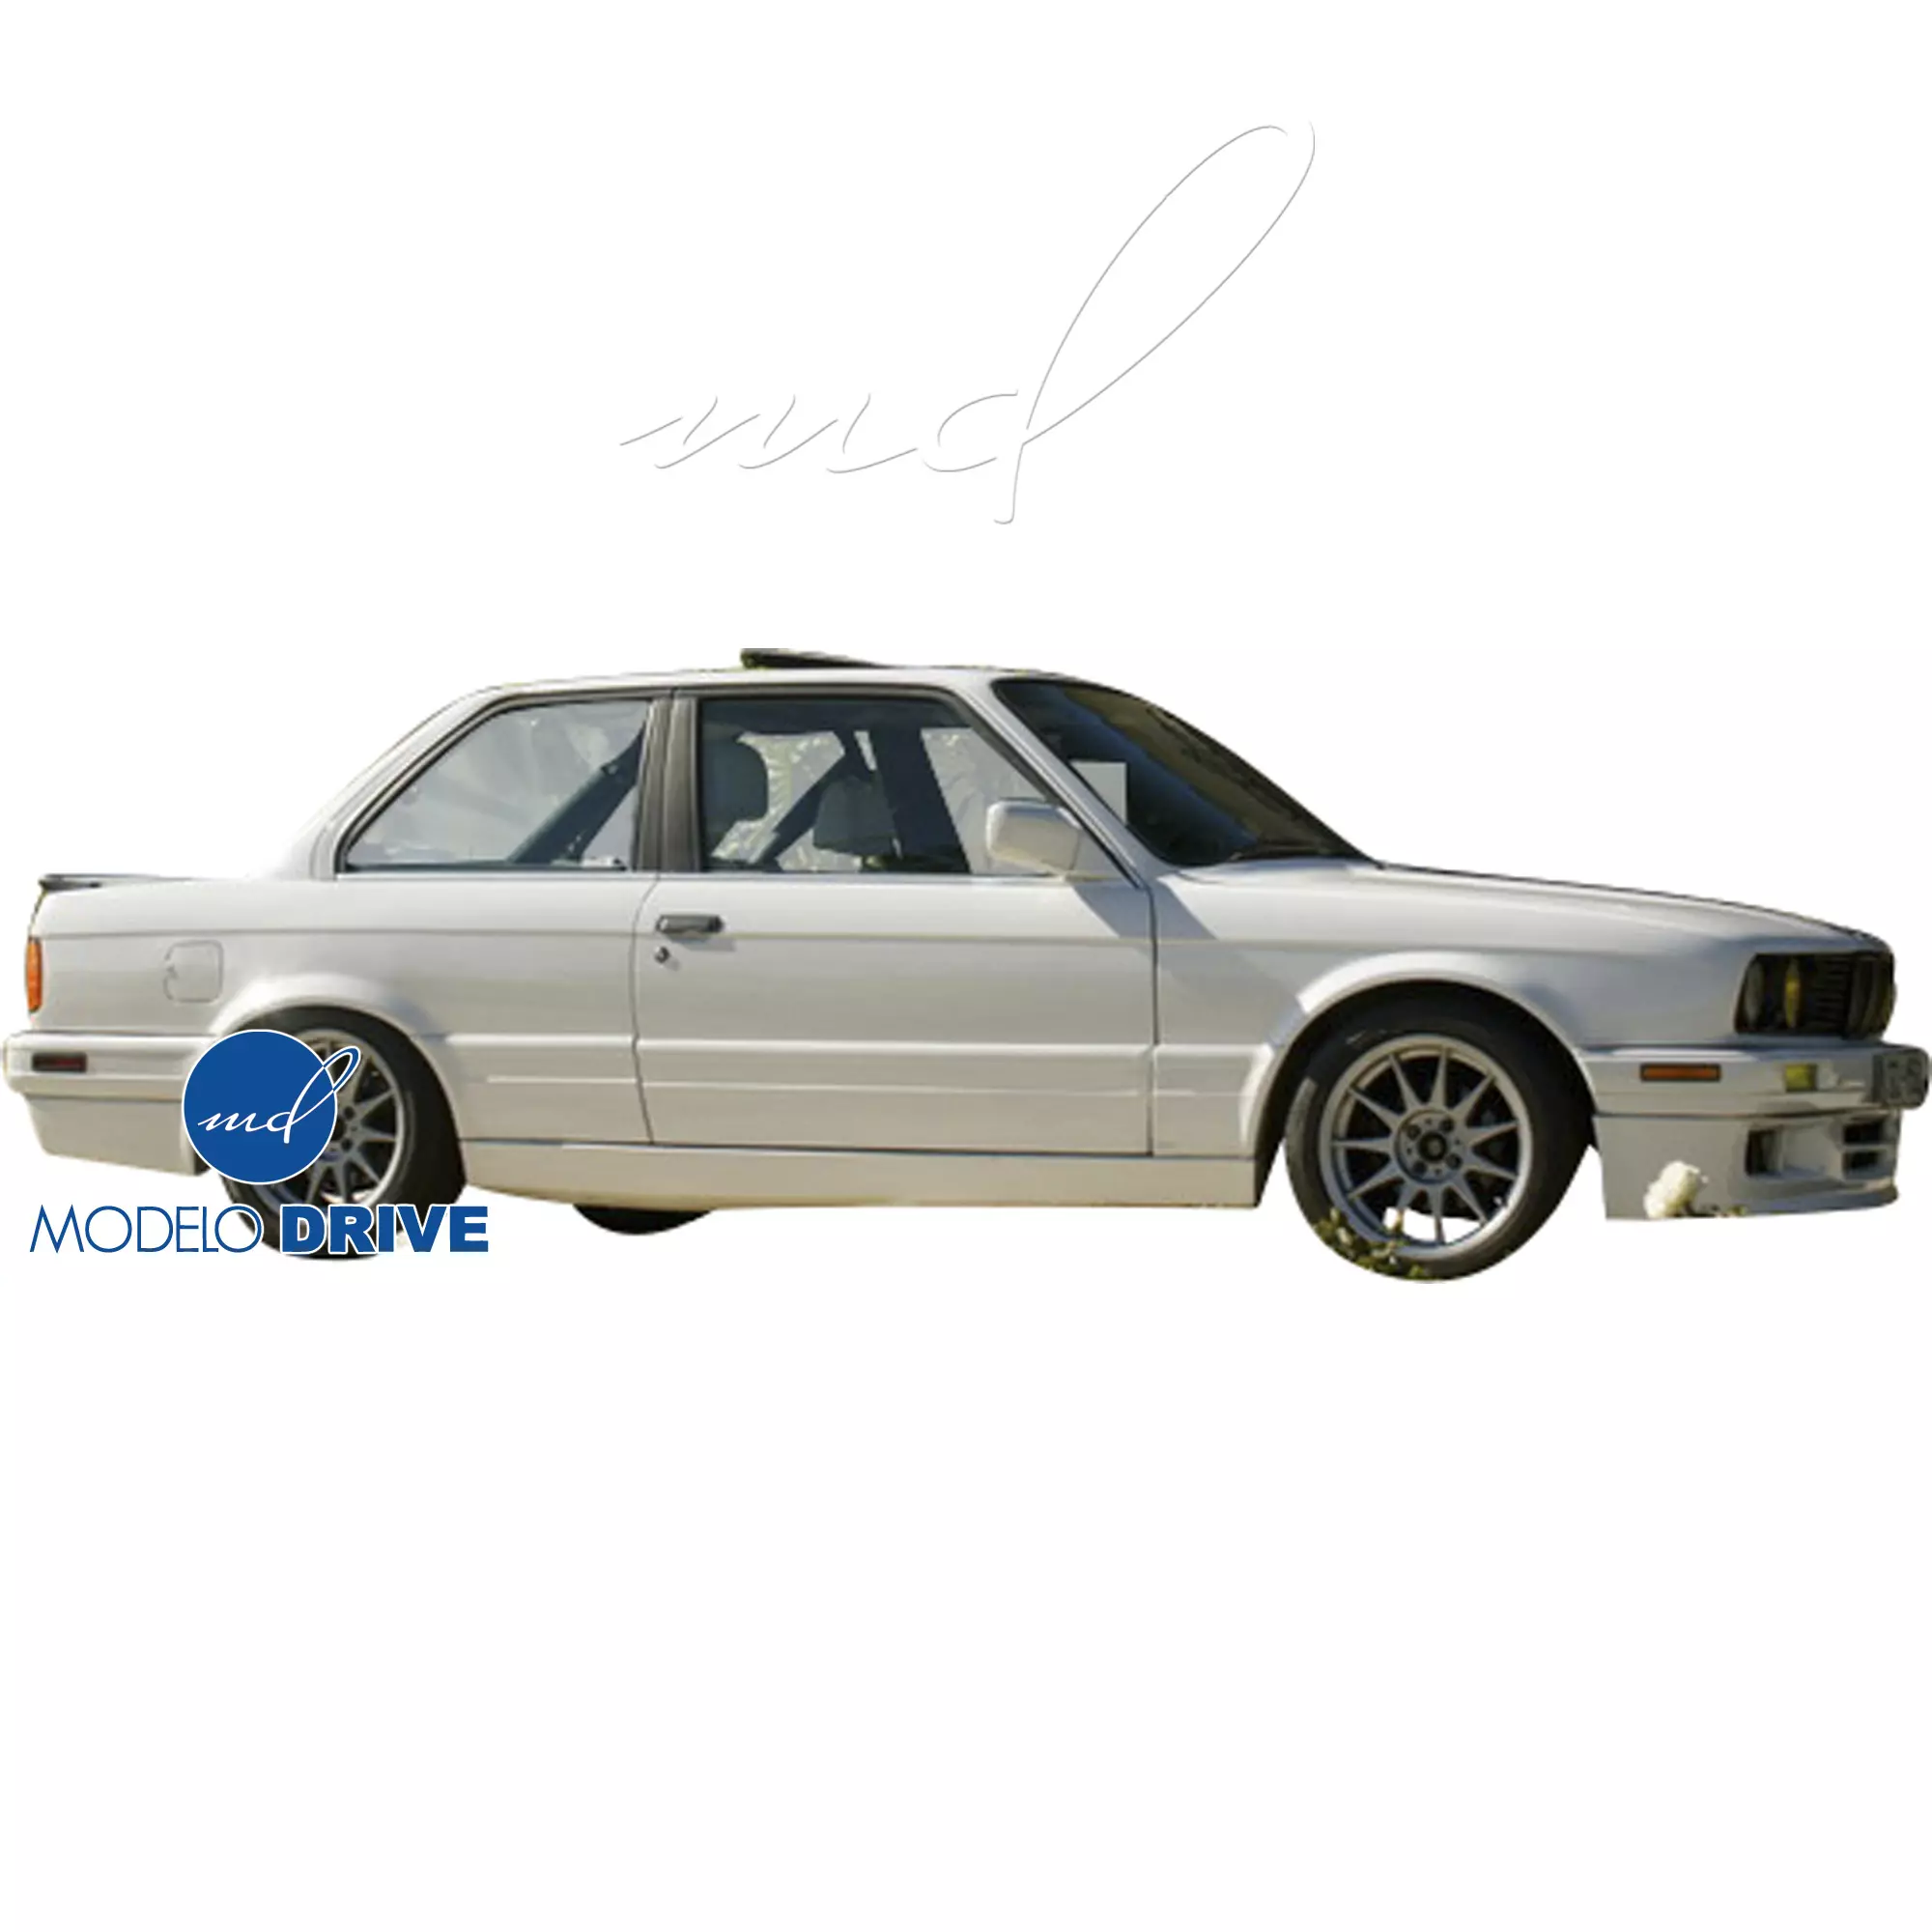 ModeloDrive FRP MTEC Side Skirts > BMW 3-Series 318i 325i E30 1984-1991 > 2dr Coupe - Image 4